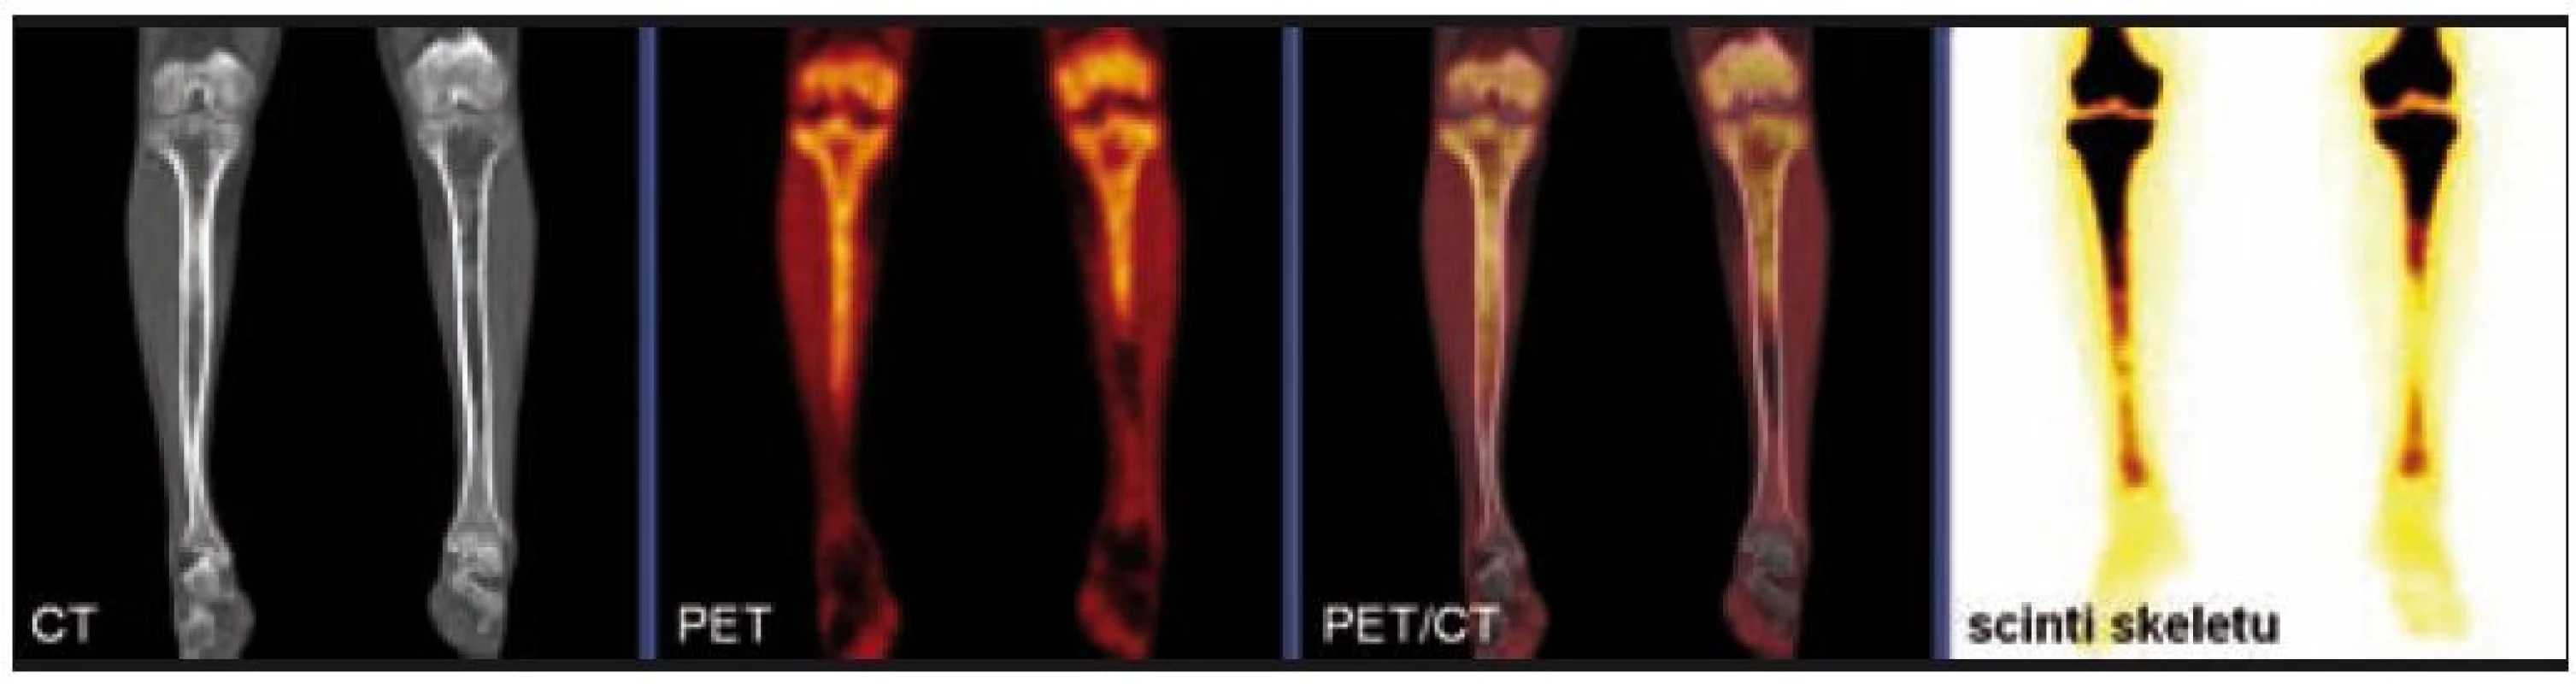 Srovnání nálezů na CT, PET a klasické kostní scintigrafii u pacienta s Erdheimovou-Chesterovou chorobou.

Na CT je patrná nepravidelná sklerotizace dřeňové dutiny obou stehenních i holenních kostí vyjma krátkého úseku střední třetiny levé tibie. V PET obrazu se zobrazila ložiska patologického hypermetabolizmu glukózy v proximálních částech obou tibií (více vpravo), kde byla zároveň popsána patologická akumulace radiofarmaka i na celotělovém scintigramu skeletu.